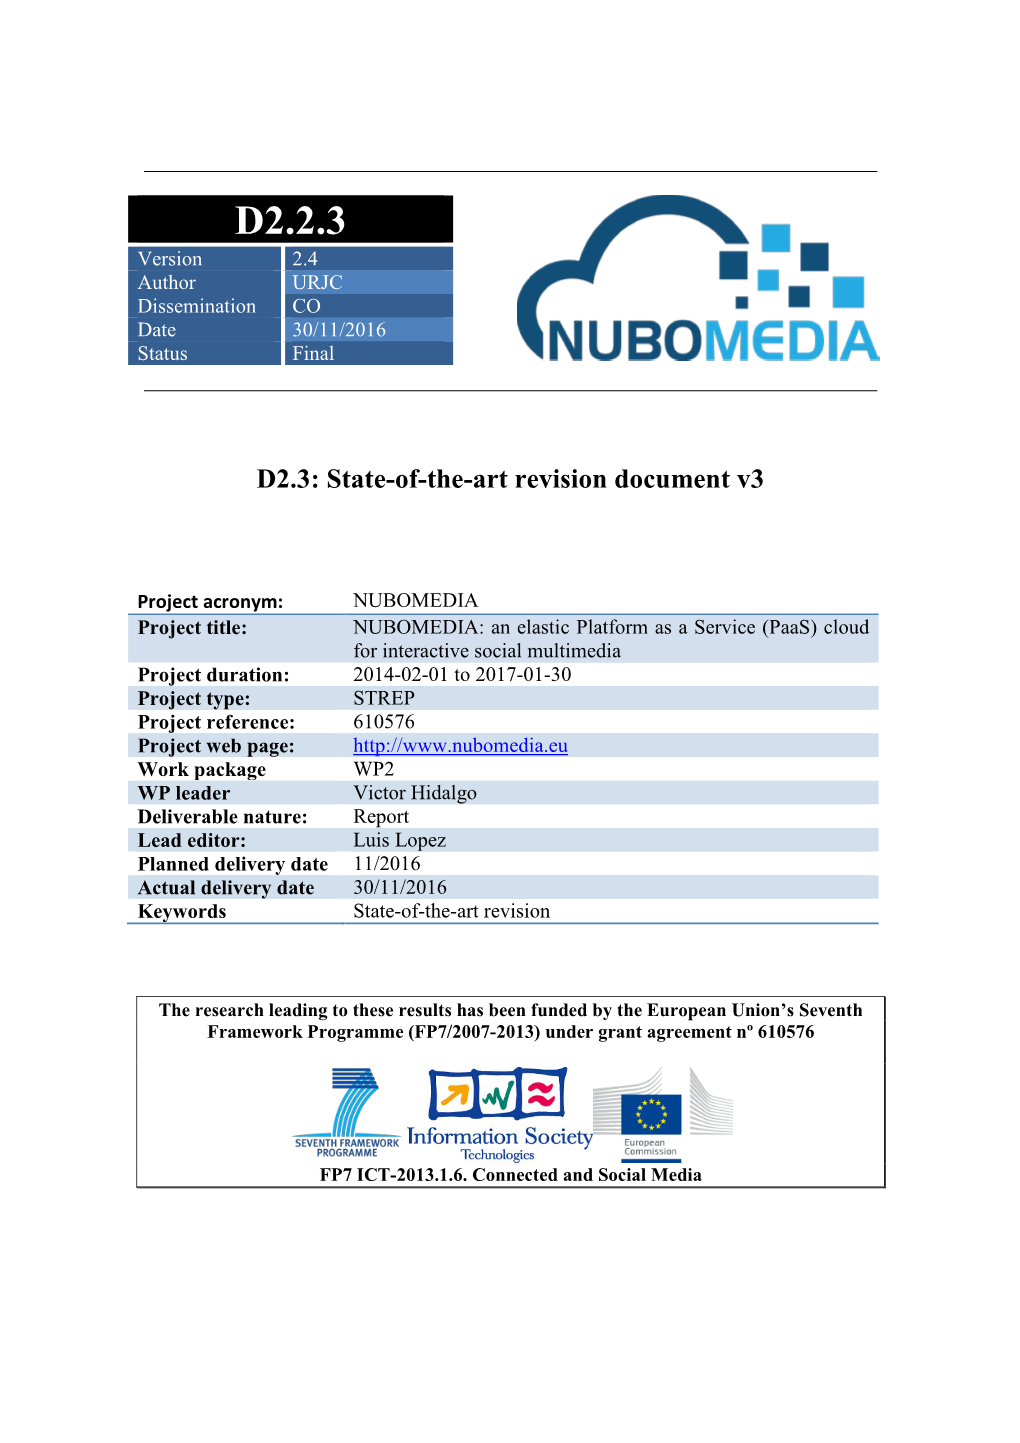 D2.2.3 Version 2.4 Author URJC Dissemination CO Date 30/11/2016 Status Final